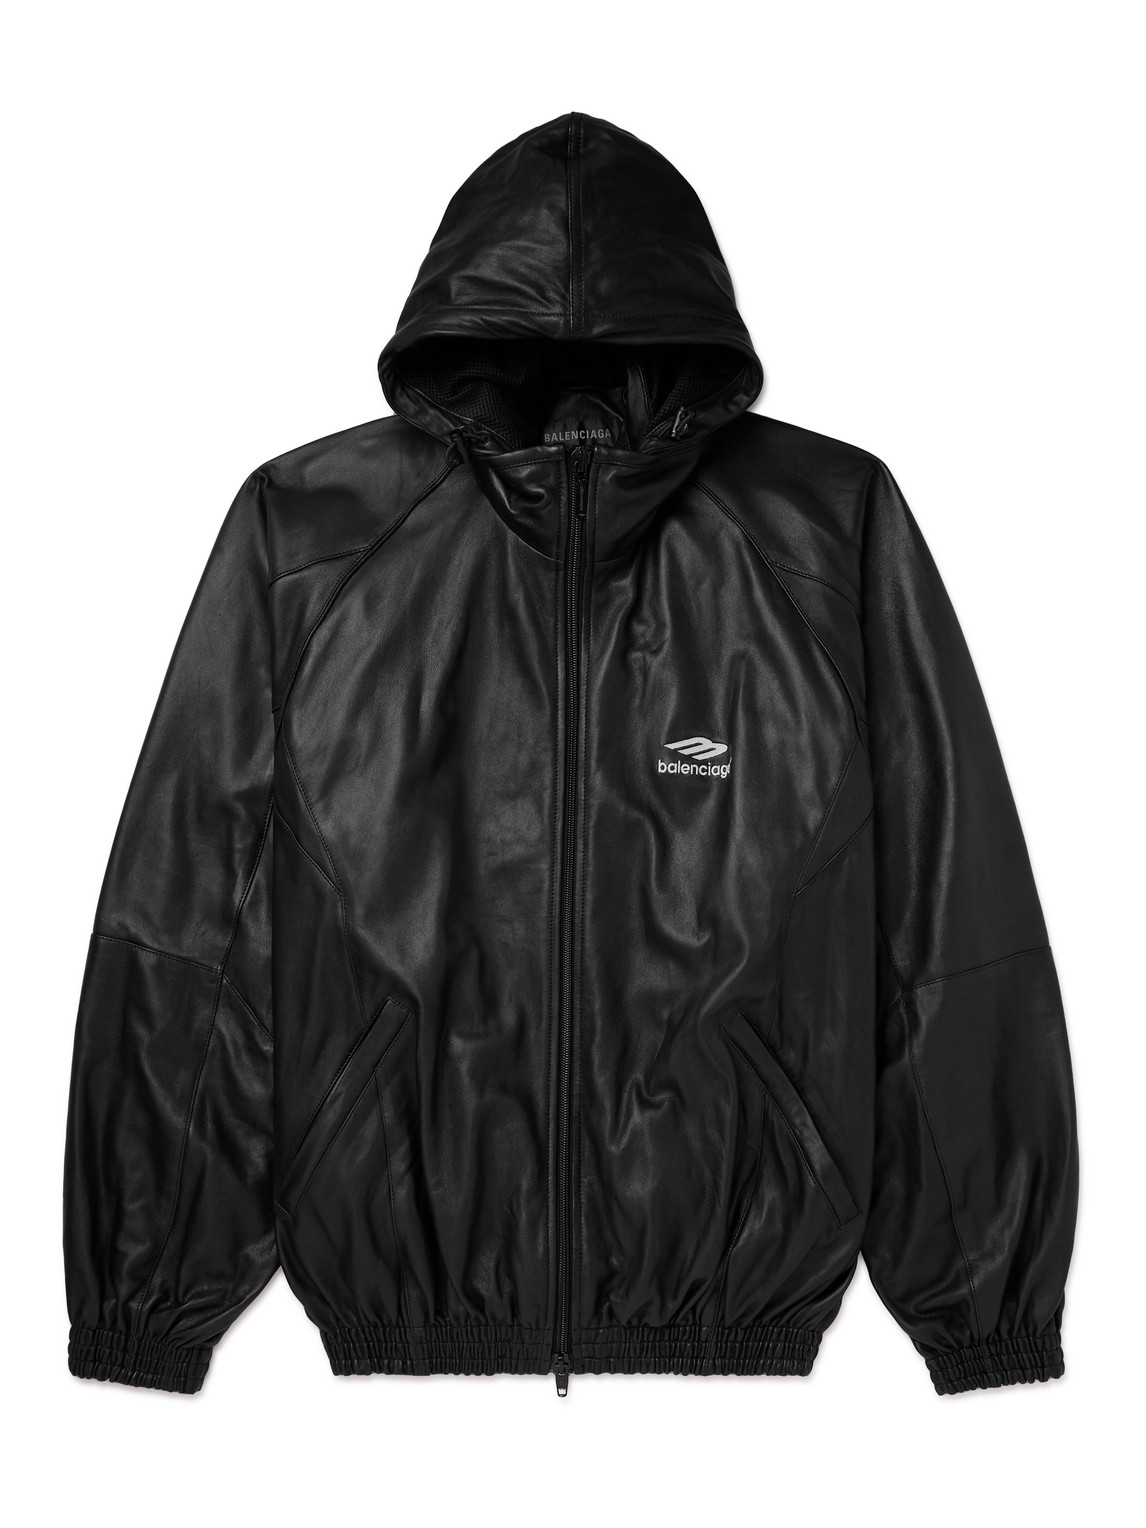 Balenciaga - Logo-Print Leather Hooded Jacket - Men - Black - 2 von Balenciaga